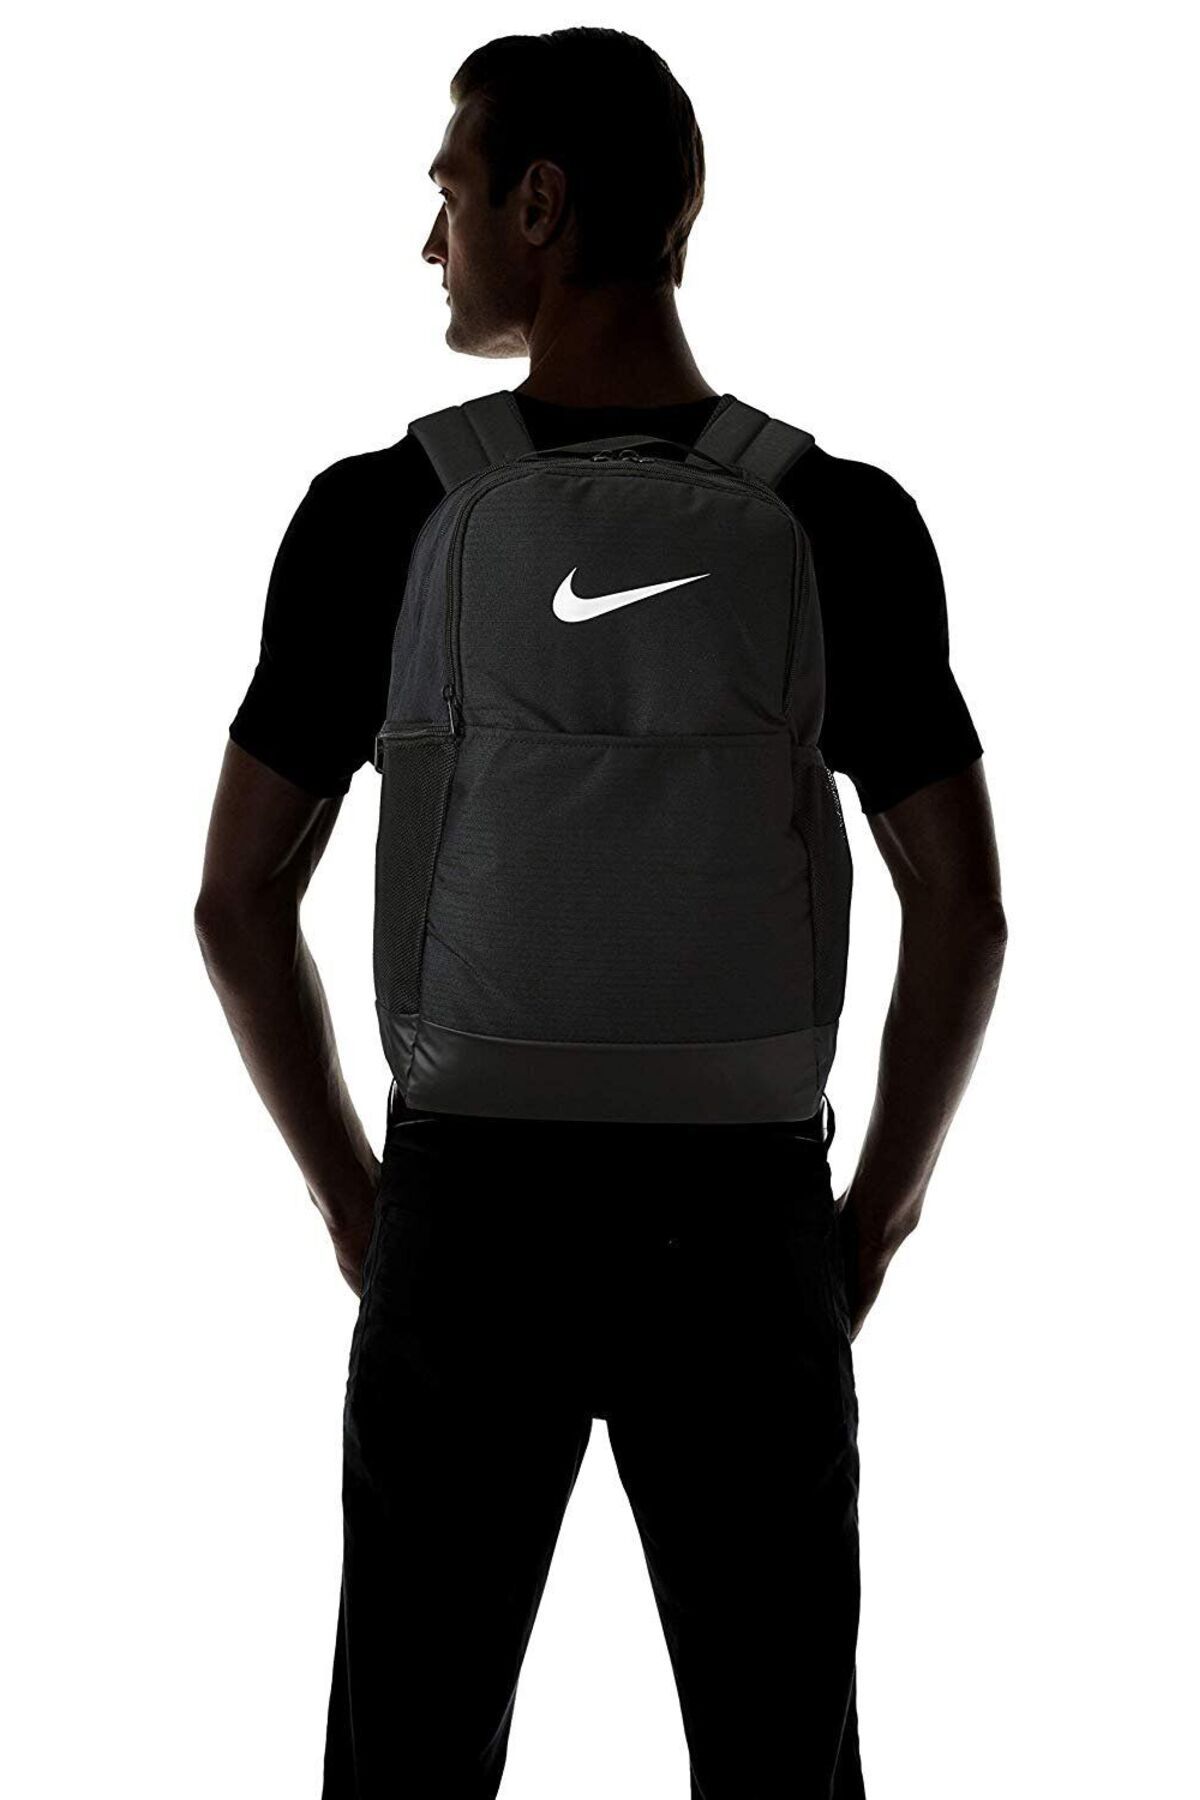 Nike Backpack Brasilia 9.0 BA5954-010 (24L) سیاه